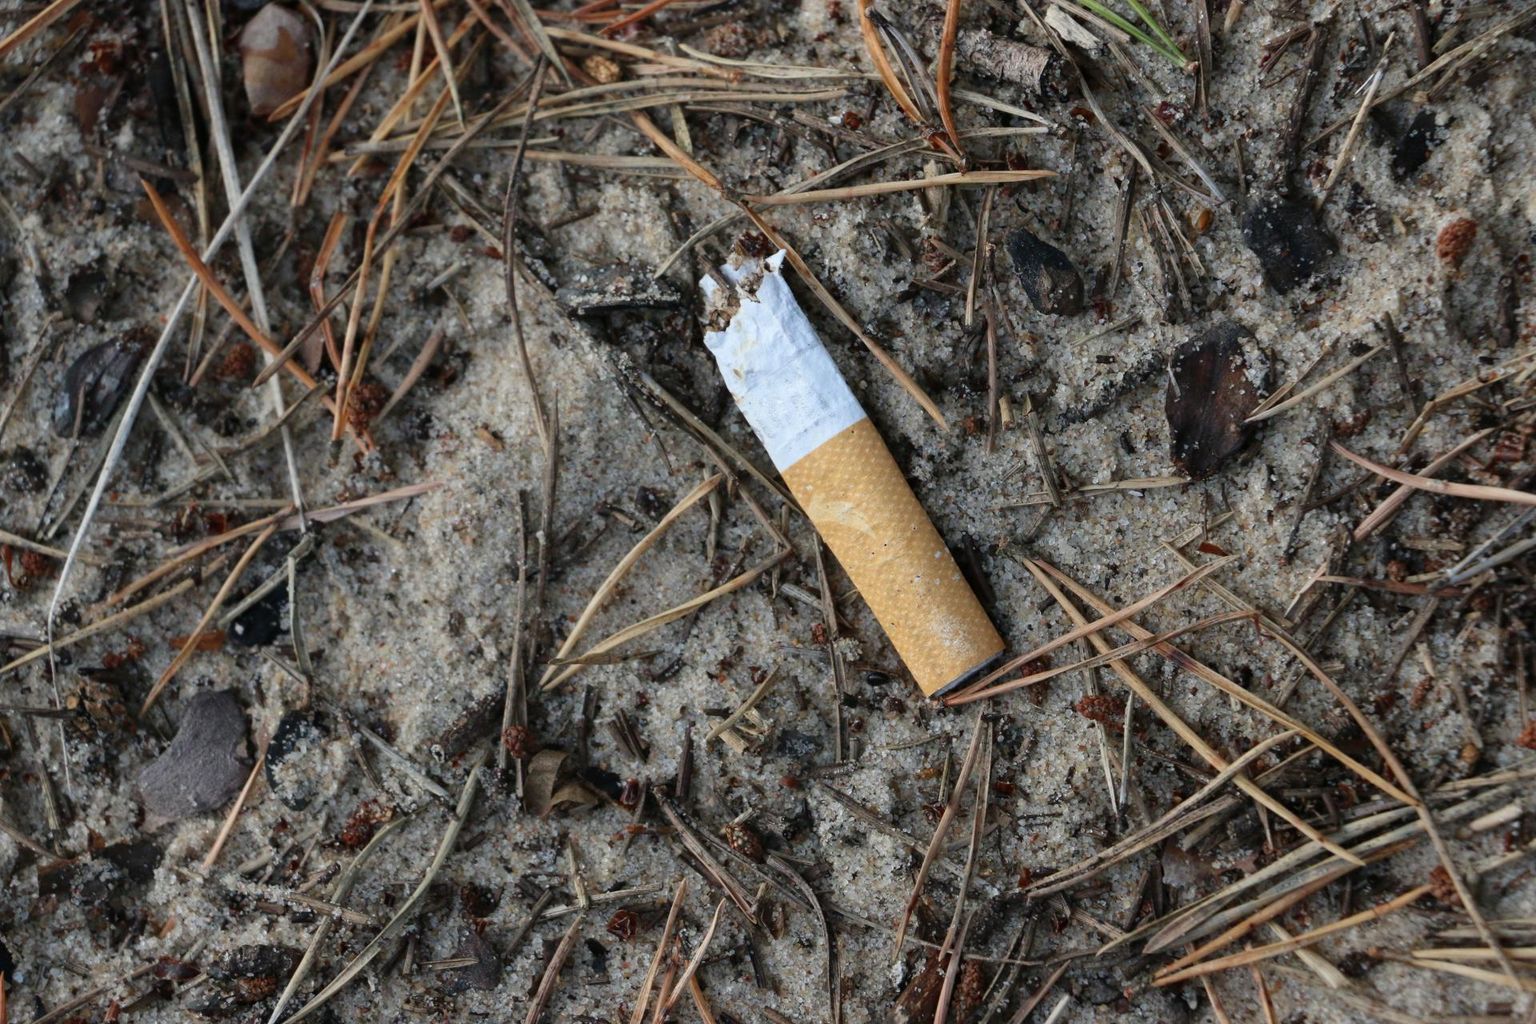 Suurimaks prügiprobleemiks peetakse plasti. Tegelikult on selleks suitsukonid.